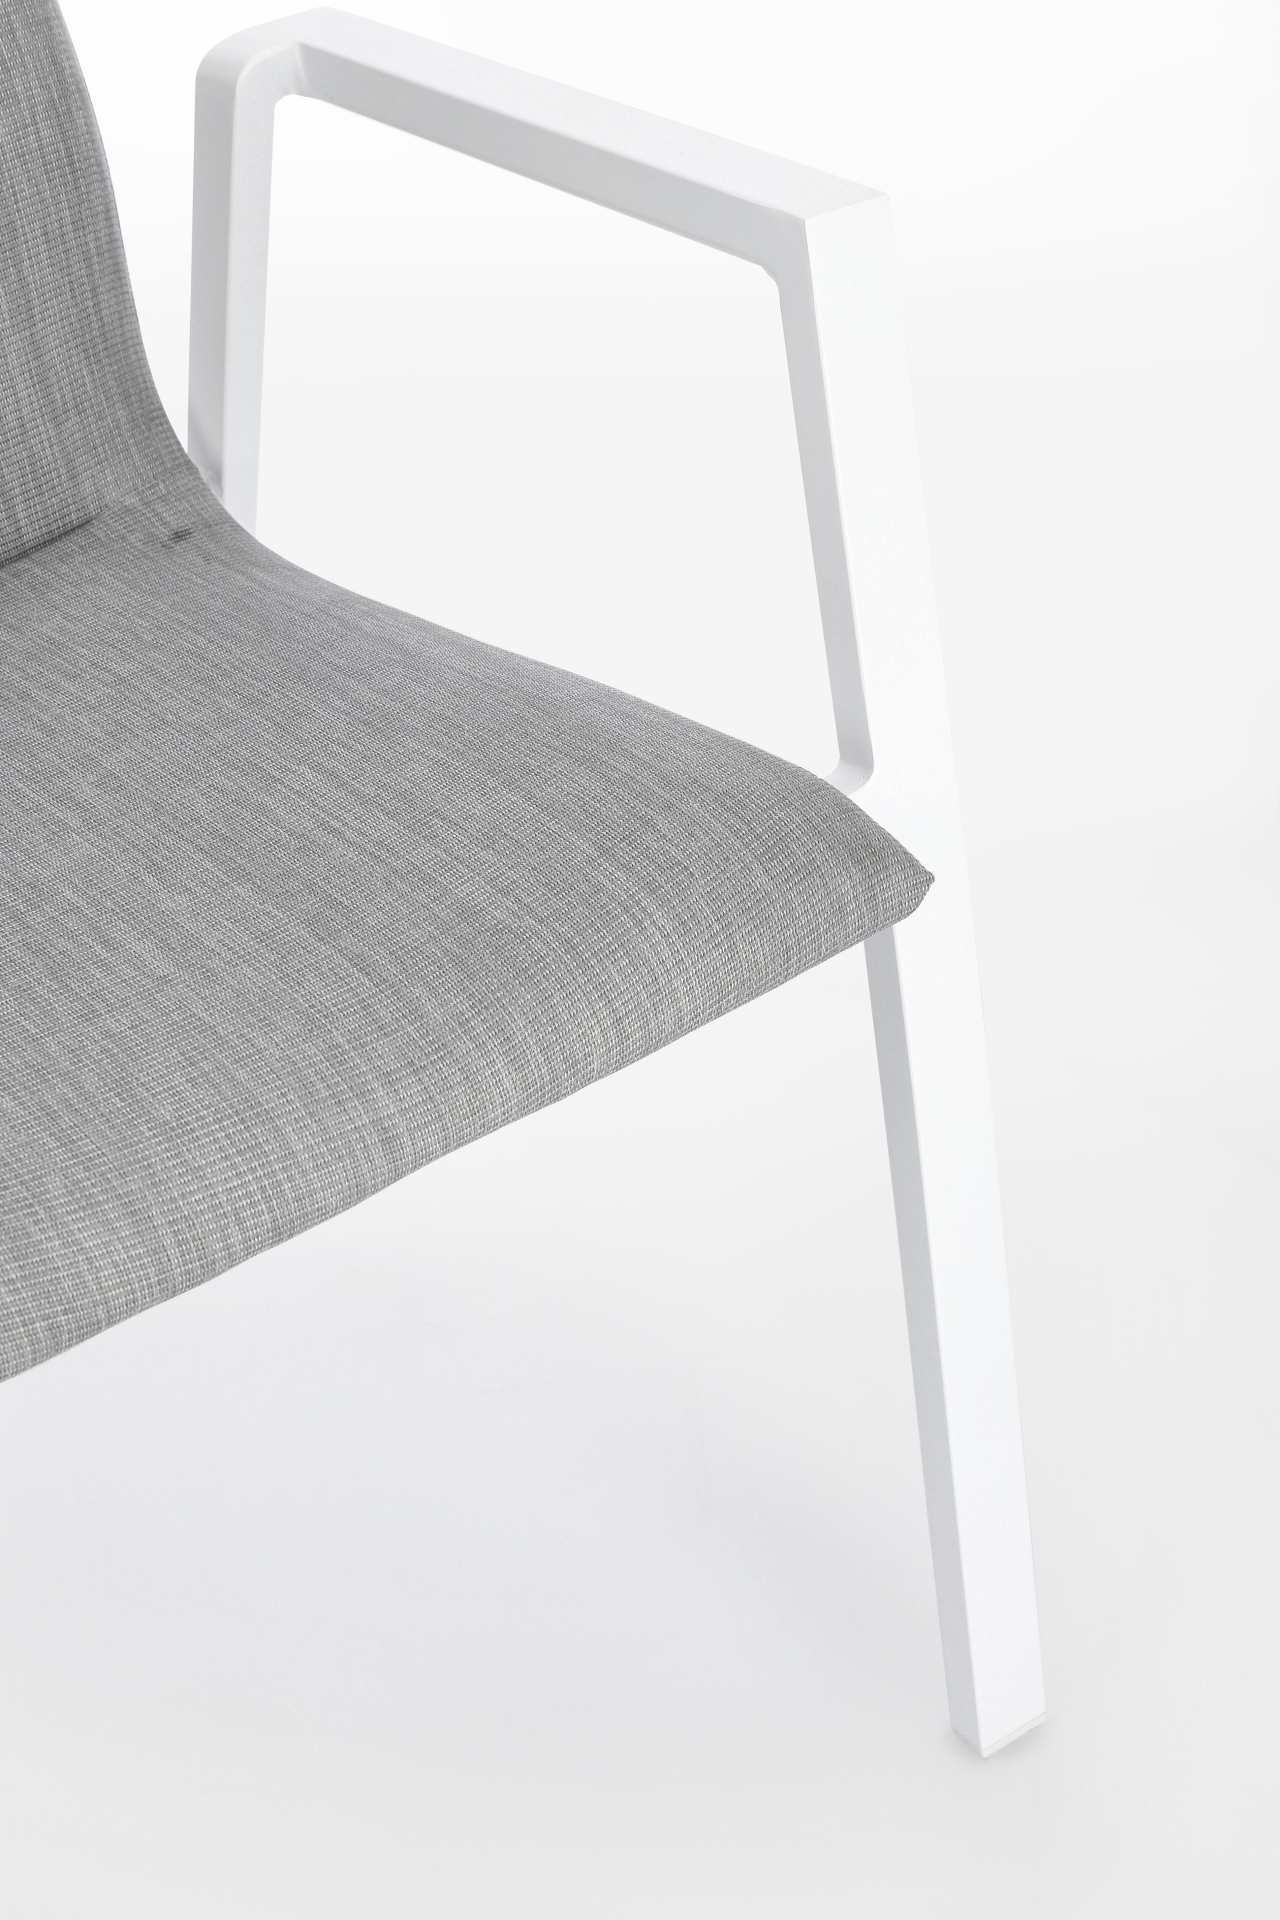 Der Gartenstuhl Odeon überzeugt mit seinem modernen Design. Gefertigt wurde er aus einem Mischstoff, welcher einen grauen Farbton besitzt. Das Gestell ist aus Aluminium und hat auch eine weiße Farbe. Der Stuhl verfügt über eine Sitzhöhe von 47 cm und ist 